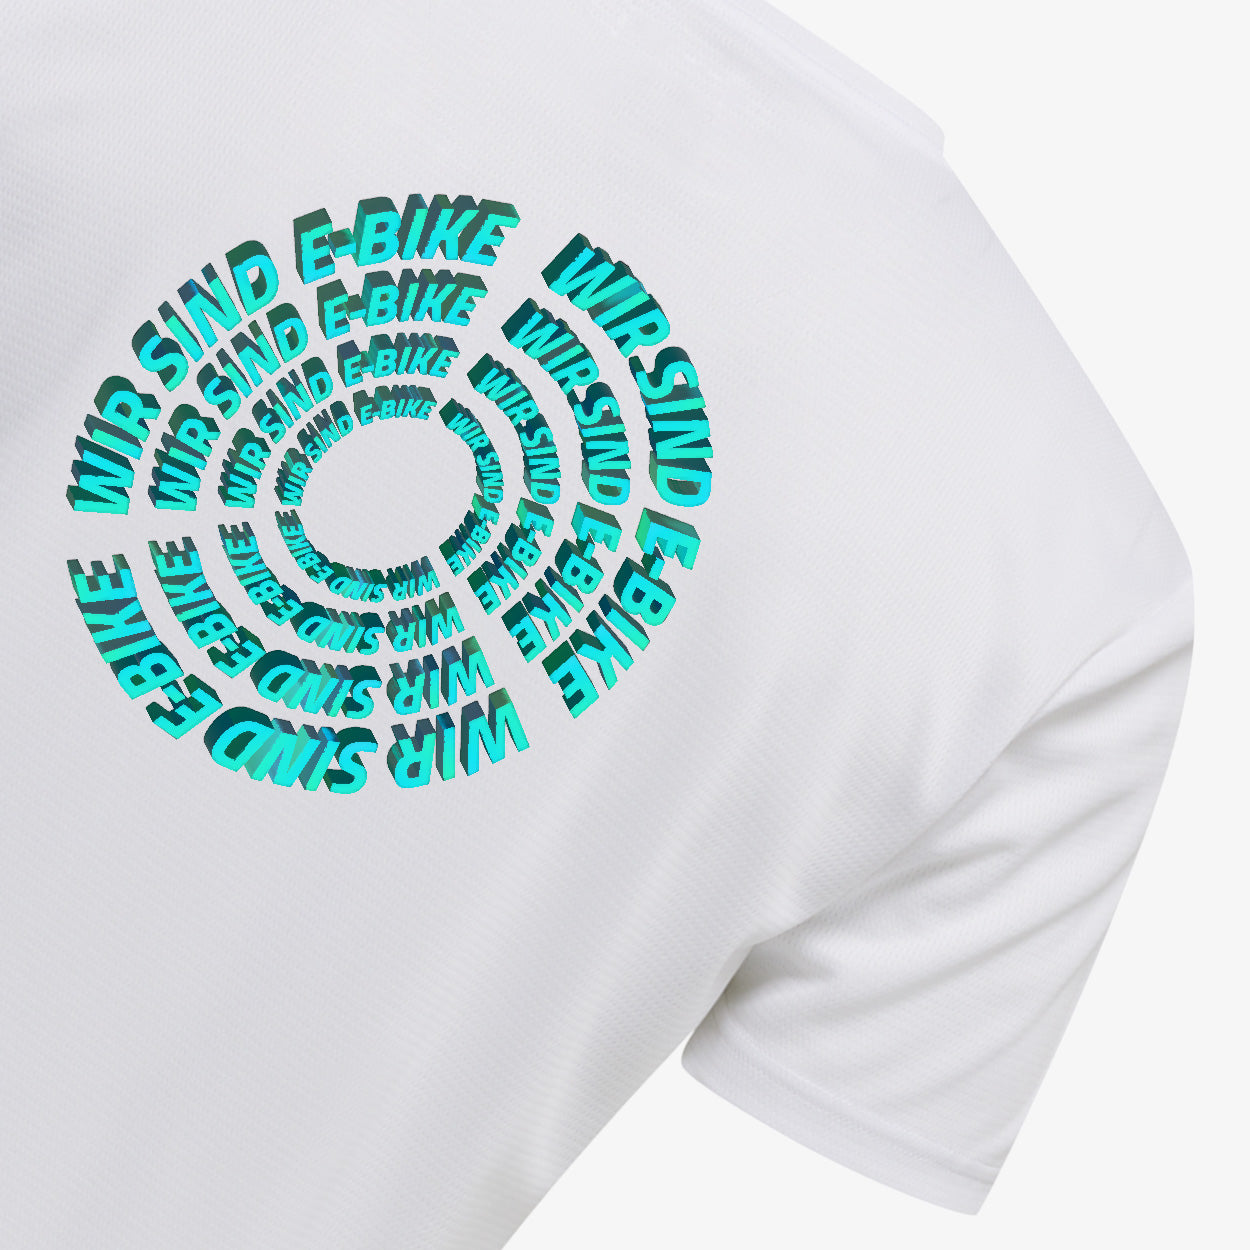 Wir sind E-Bike Universe - T-Shirt for Kids